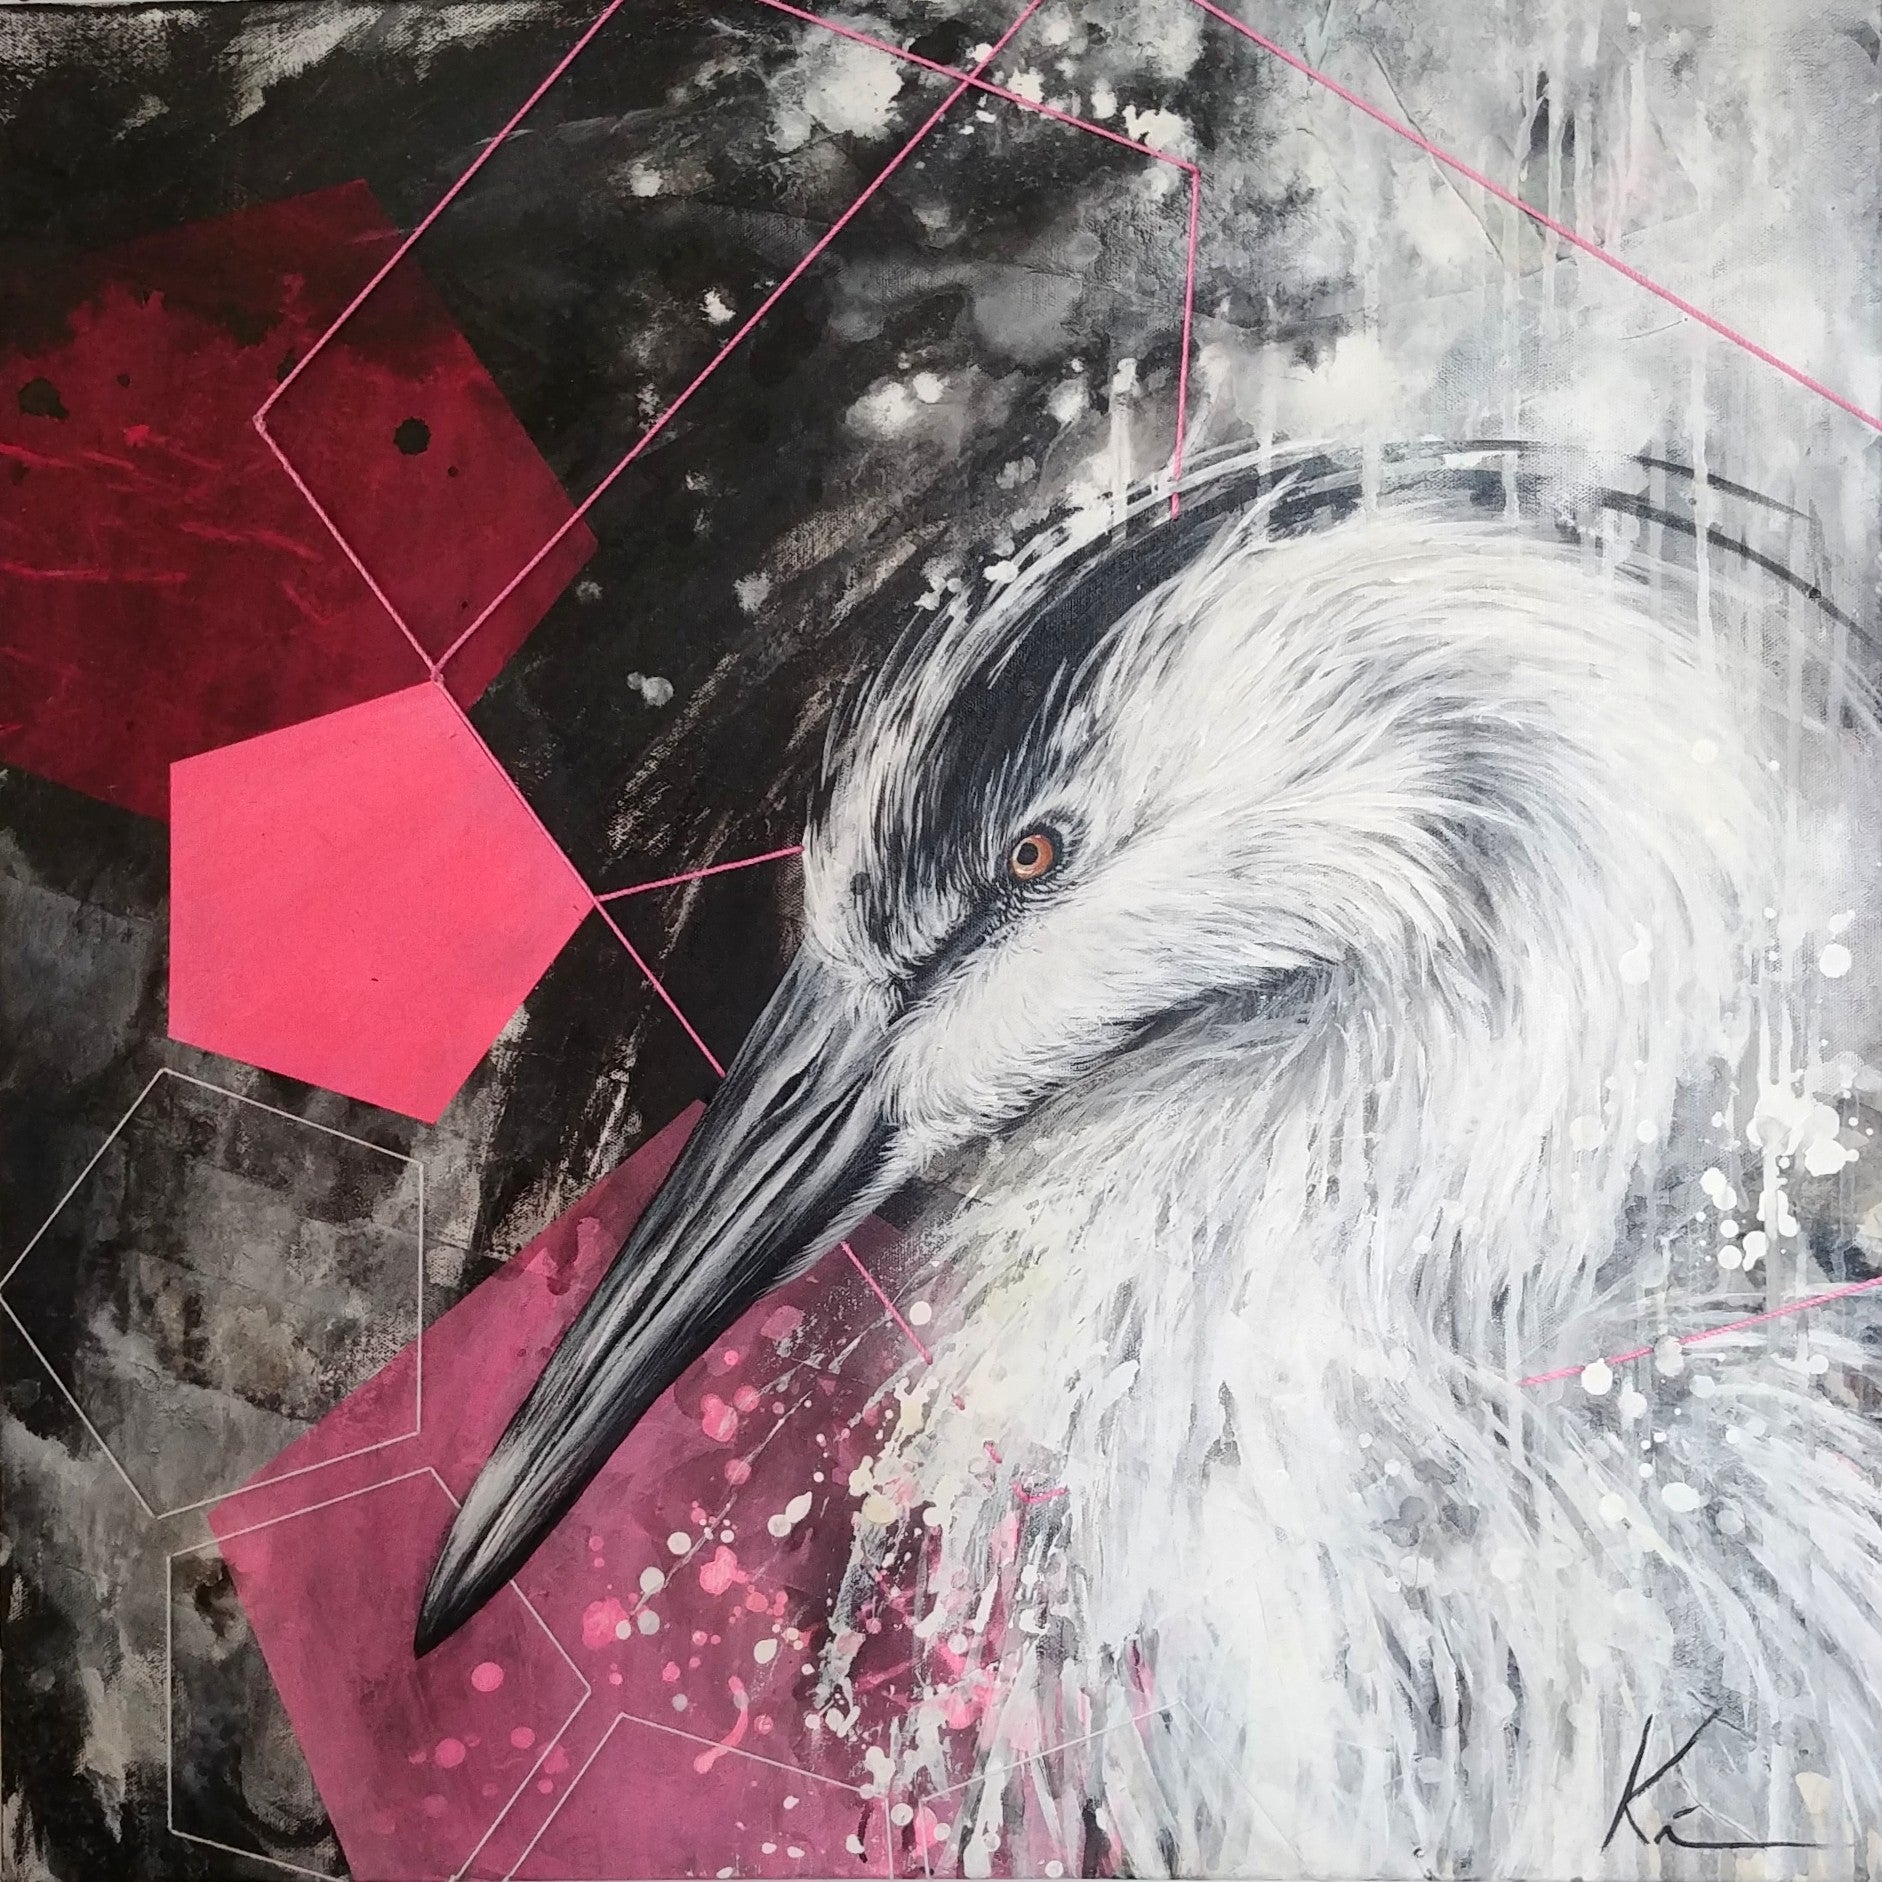 Héron majestueux peint à l'acrylique sur fond abstrait noir, entouré de pentagones roses.